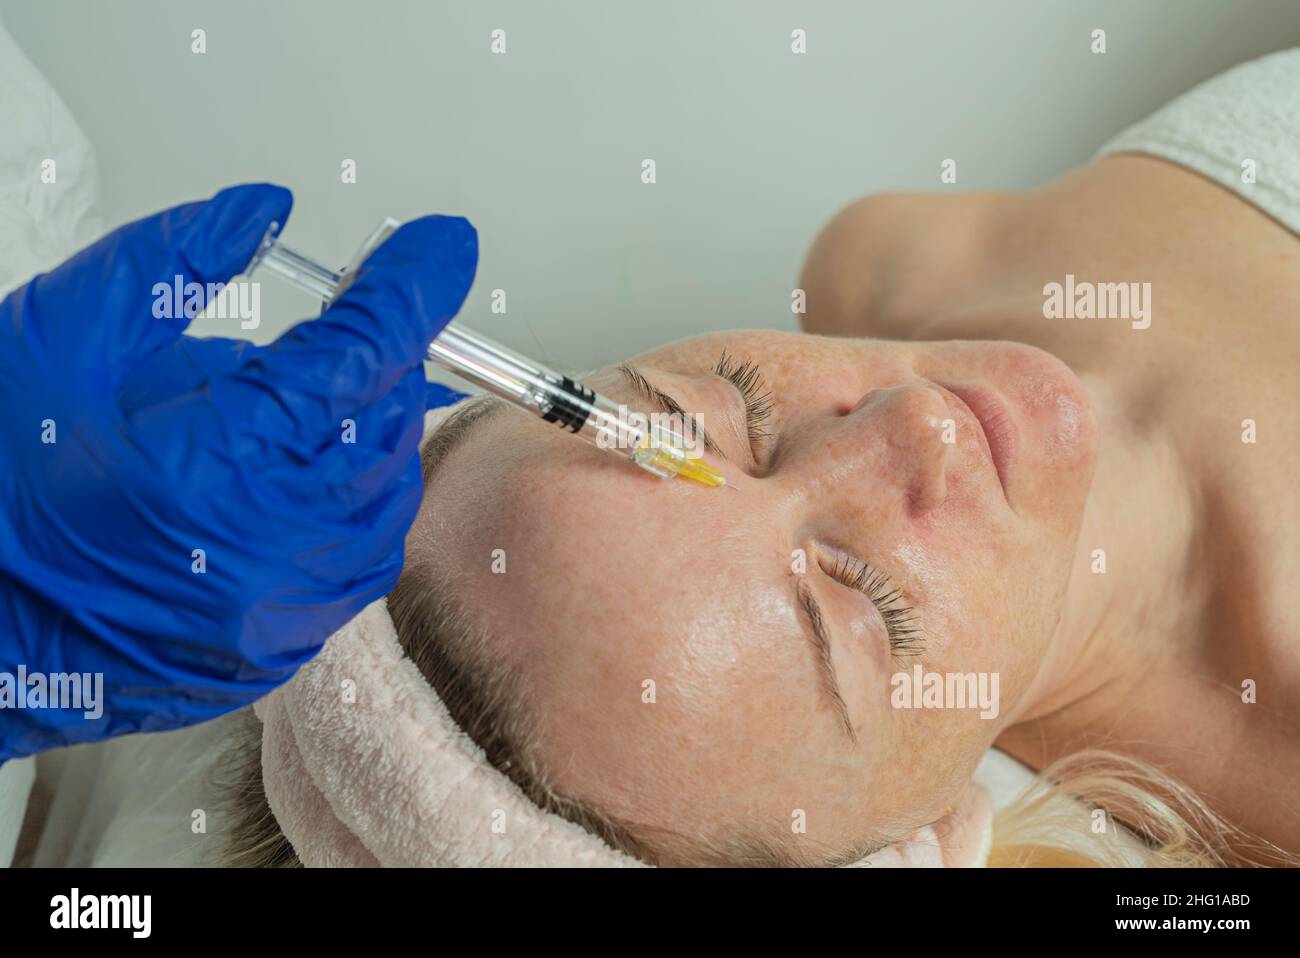 Nahaufnahme eines zugeschnittenen Bildes von den Händen eines Arztes, der eine Mesotherapie mit einer schönen Frau im Gesicht macht Stockfoto